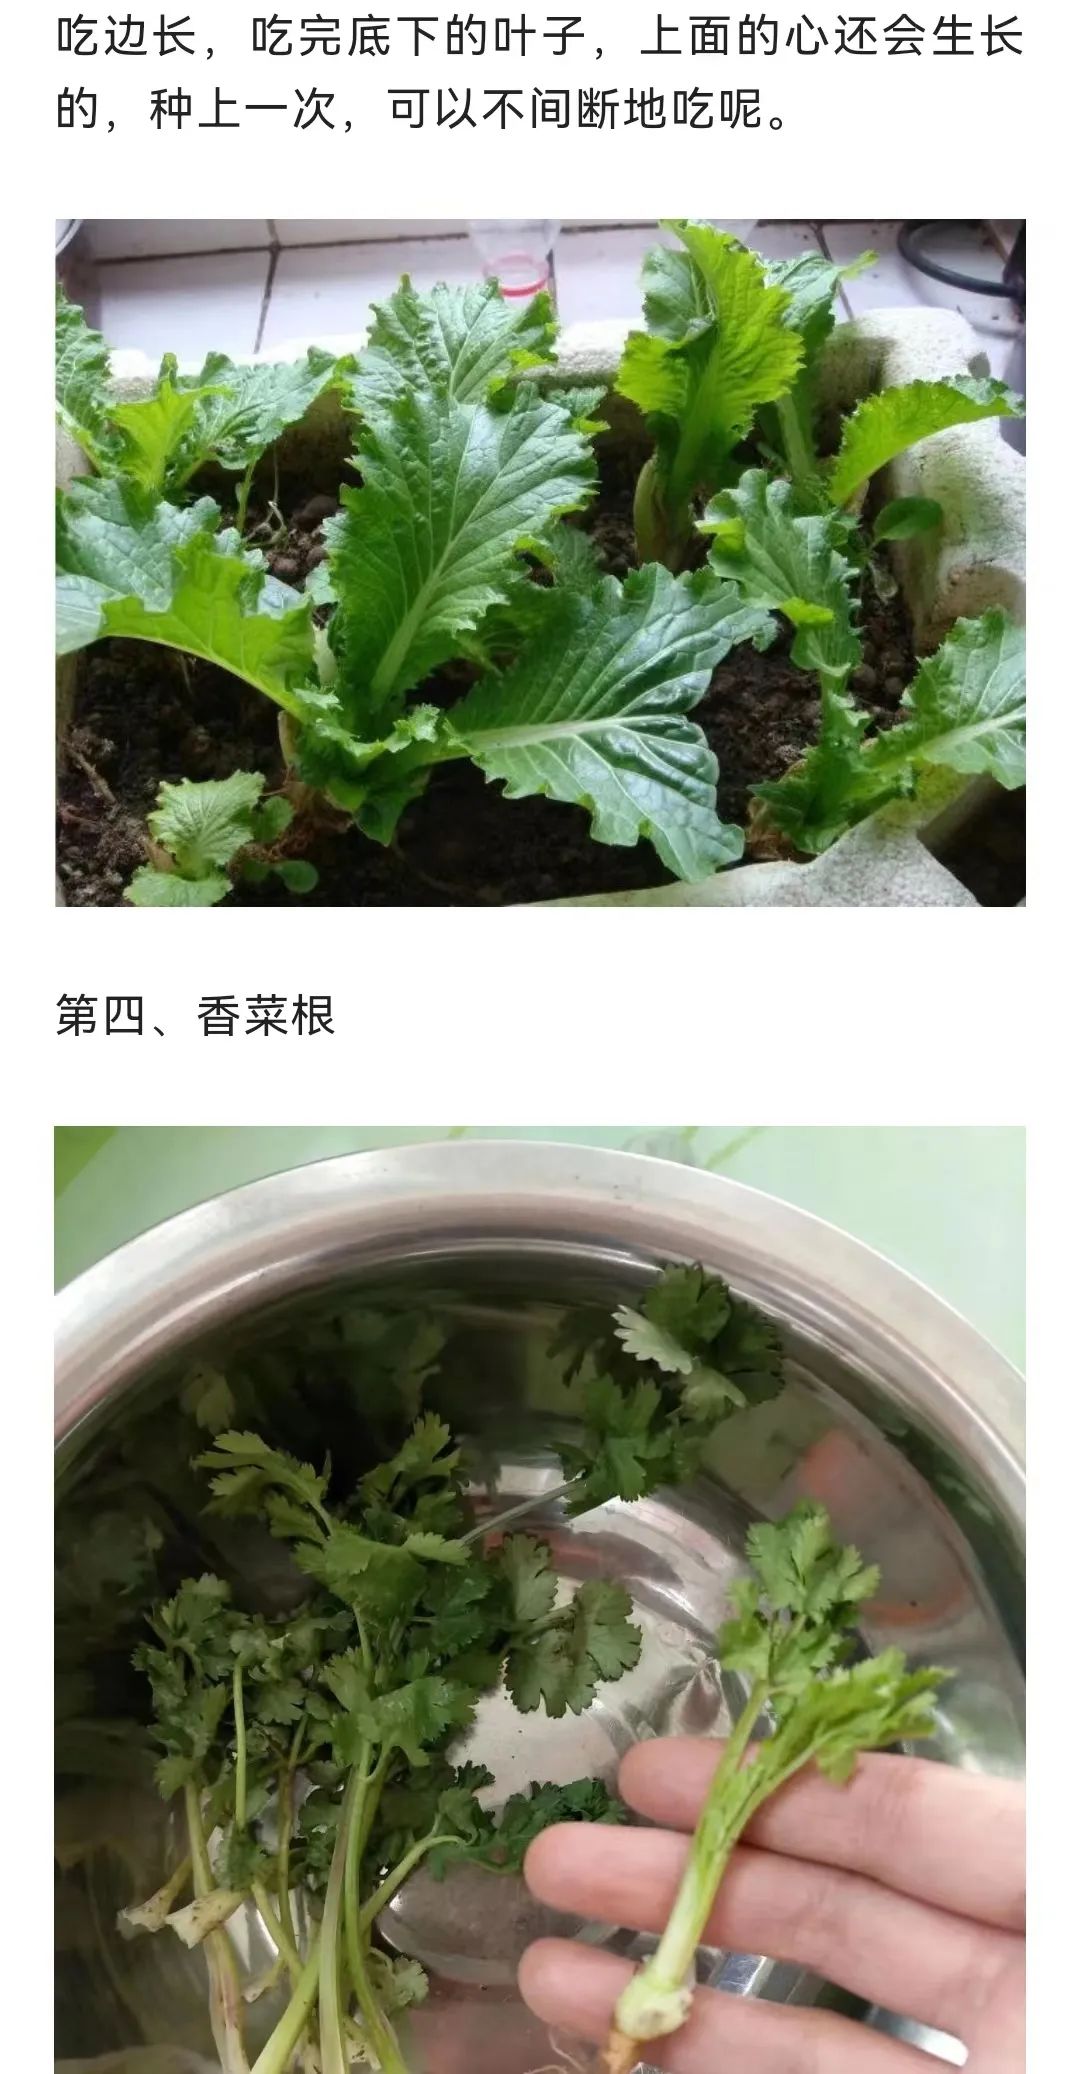 巾帼学农4种小菜根吃完不要扔埋在花盆里半个月又长出新蔬菜